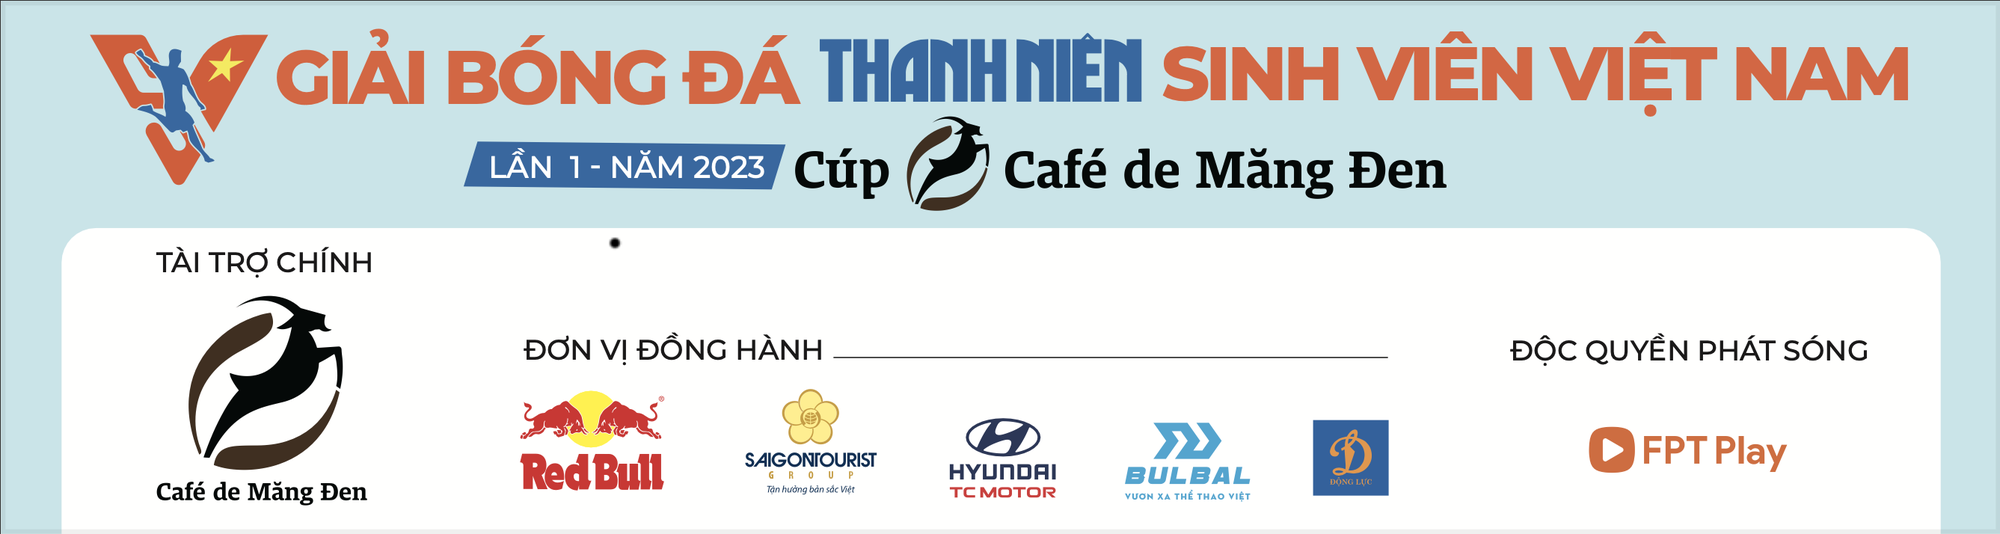 Nhà vô địch AFF Cup kỳ vọng vào giải bóng đá Thanh Niên Sinh viên Việt Nam - Ảnh 4.